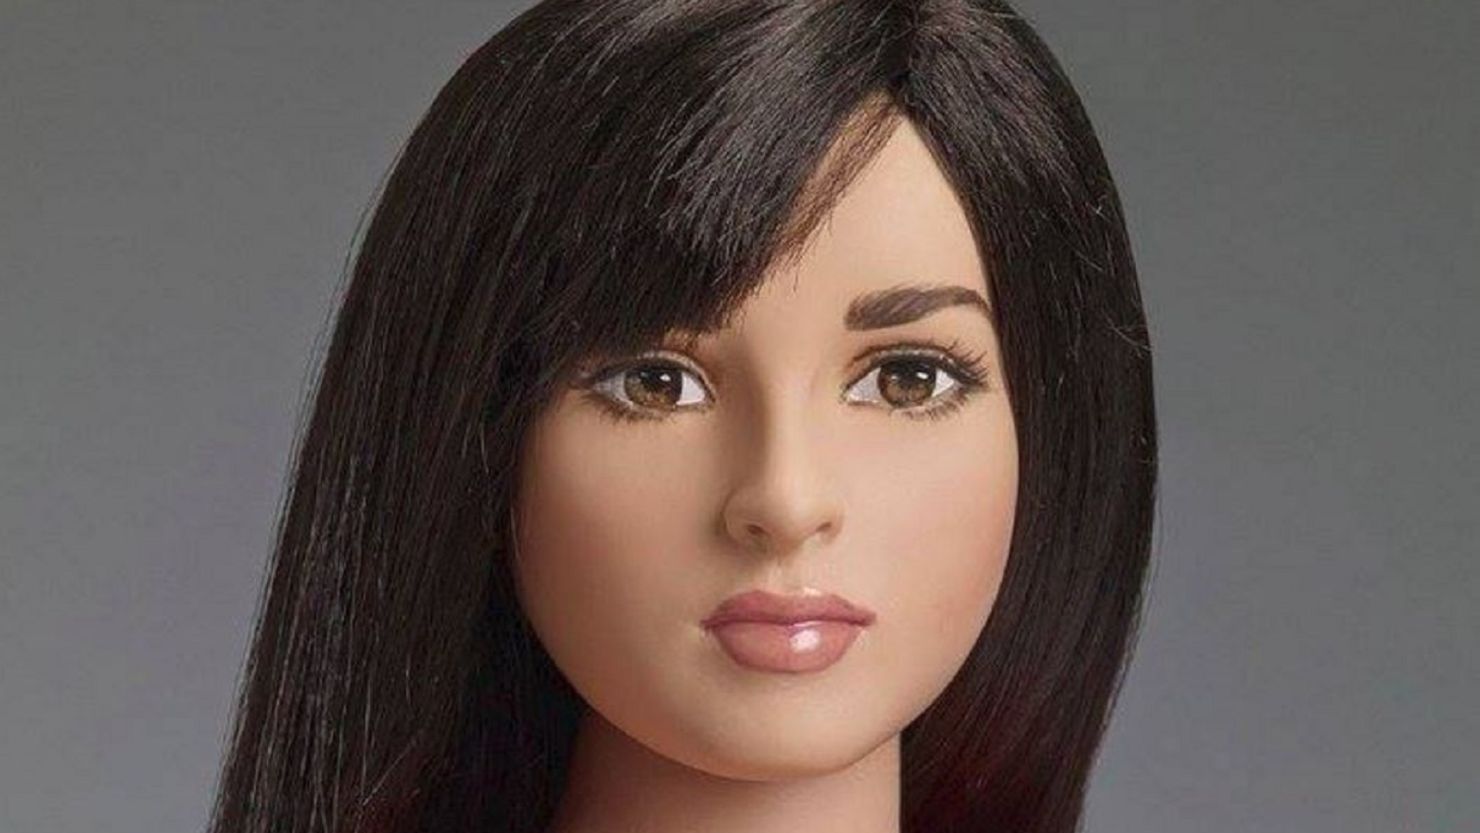 Fashion Mannequin Doll Wig Head - Doll Head - Sticker